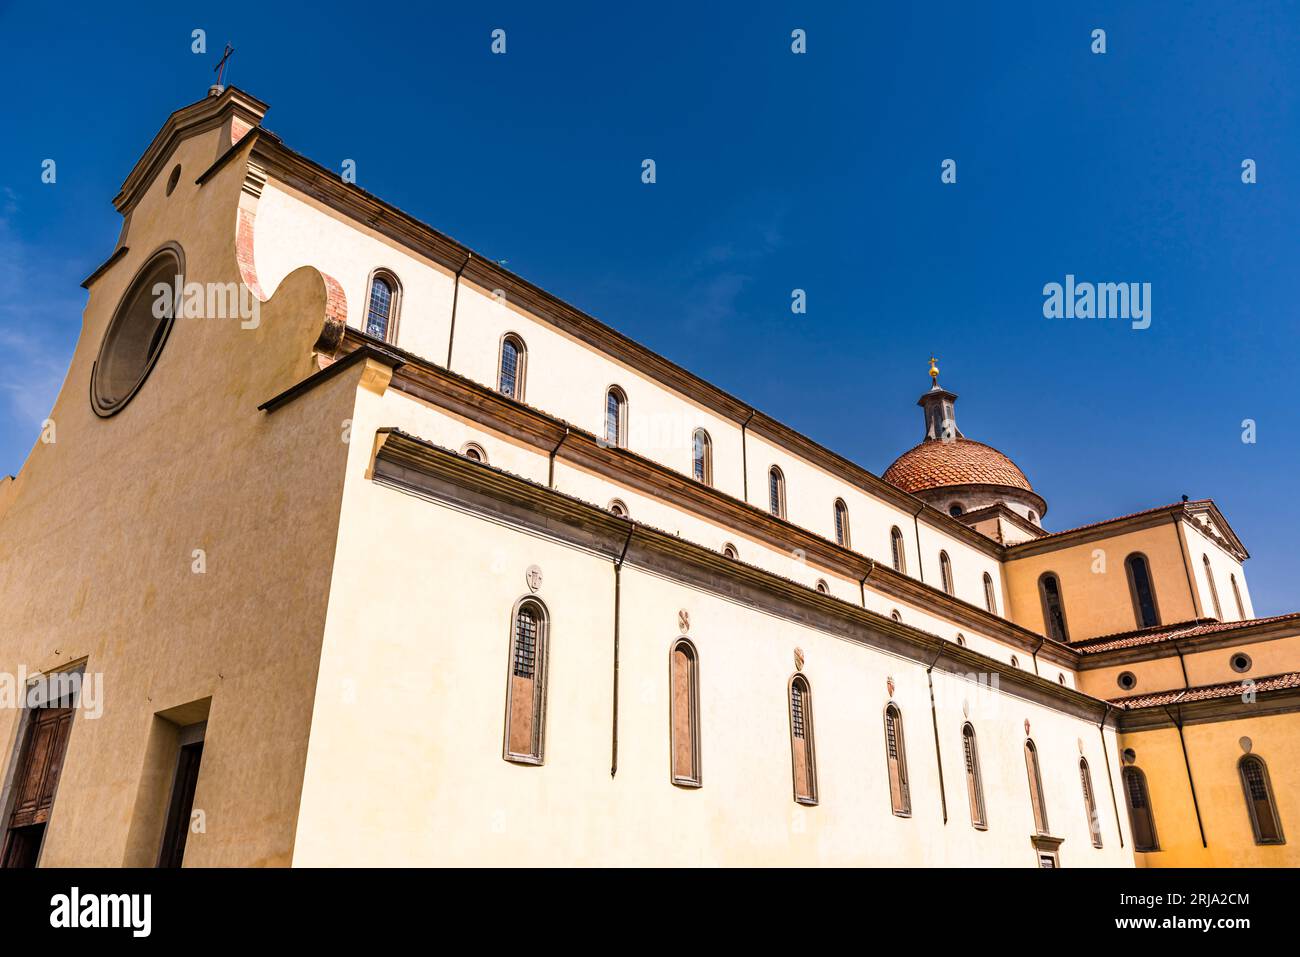 The facade of the Basilica di Santo Spirito, Florence, Italy Stock Photo